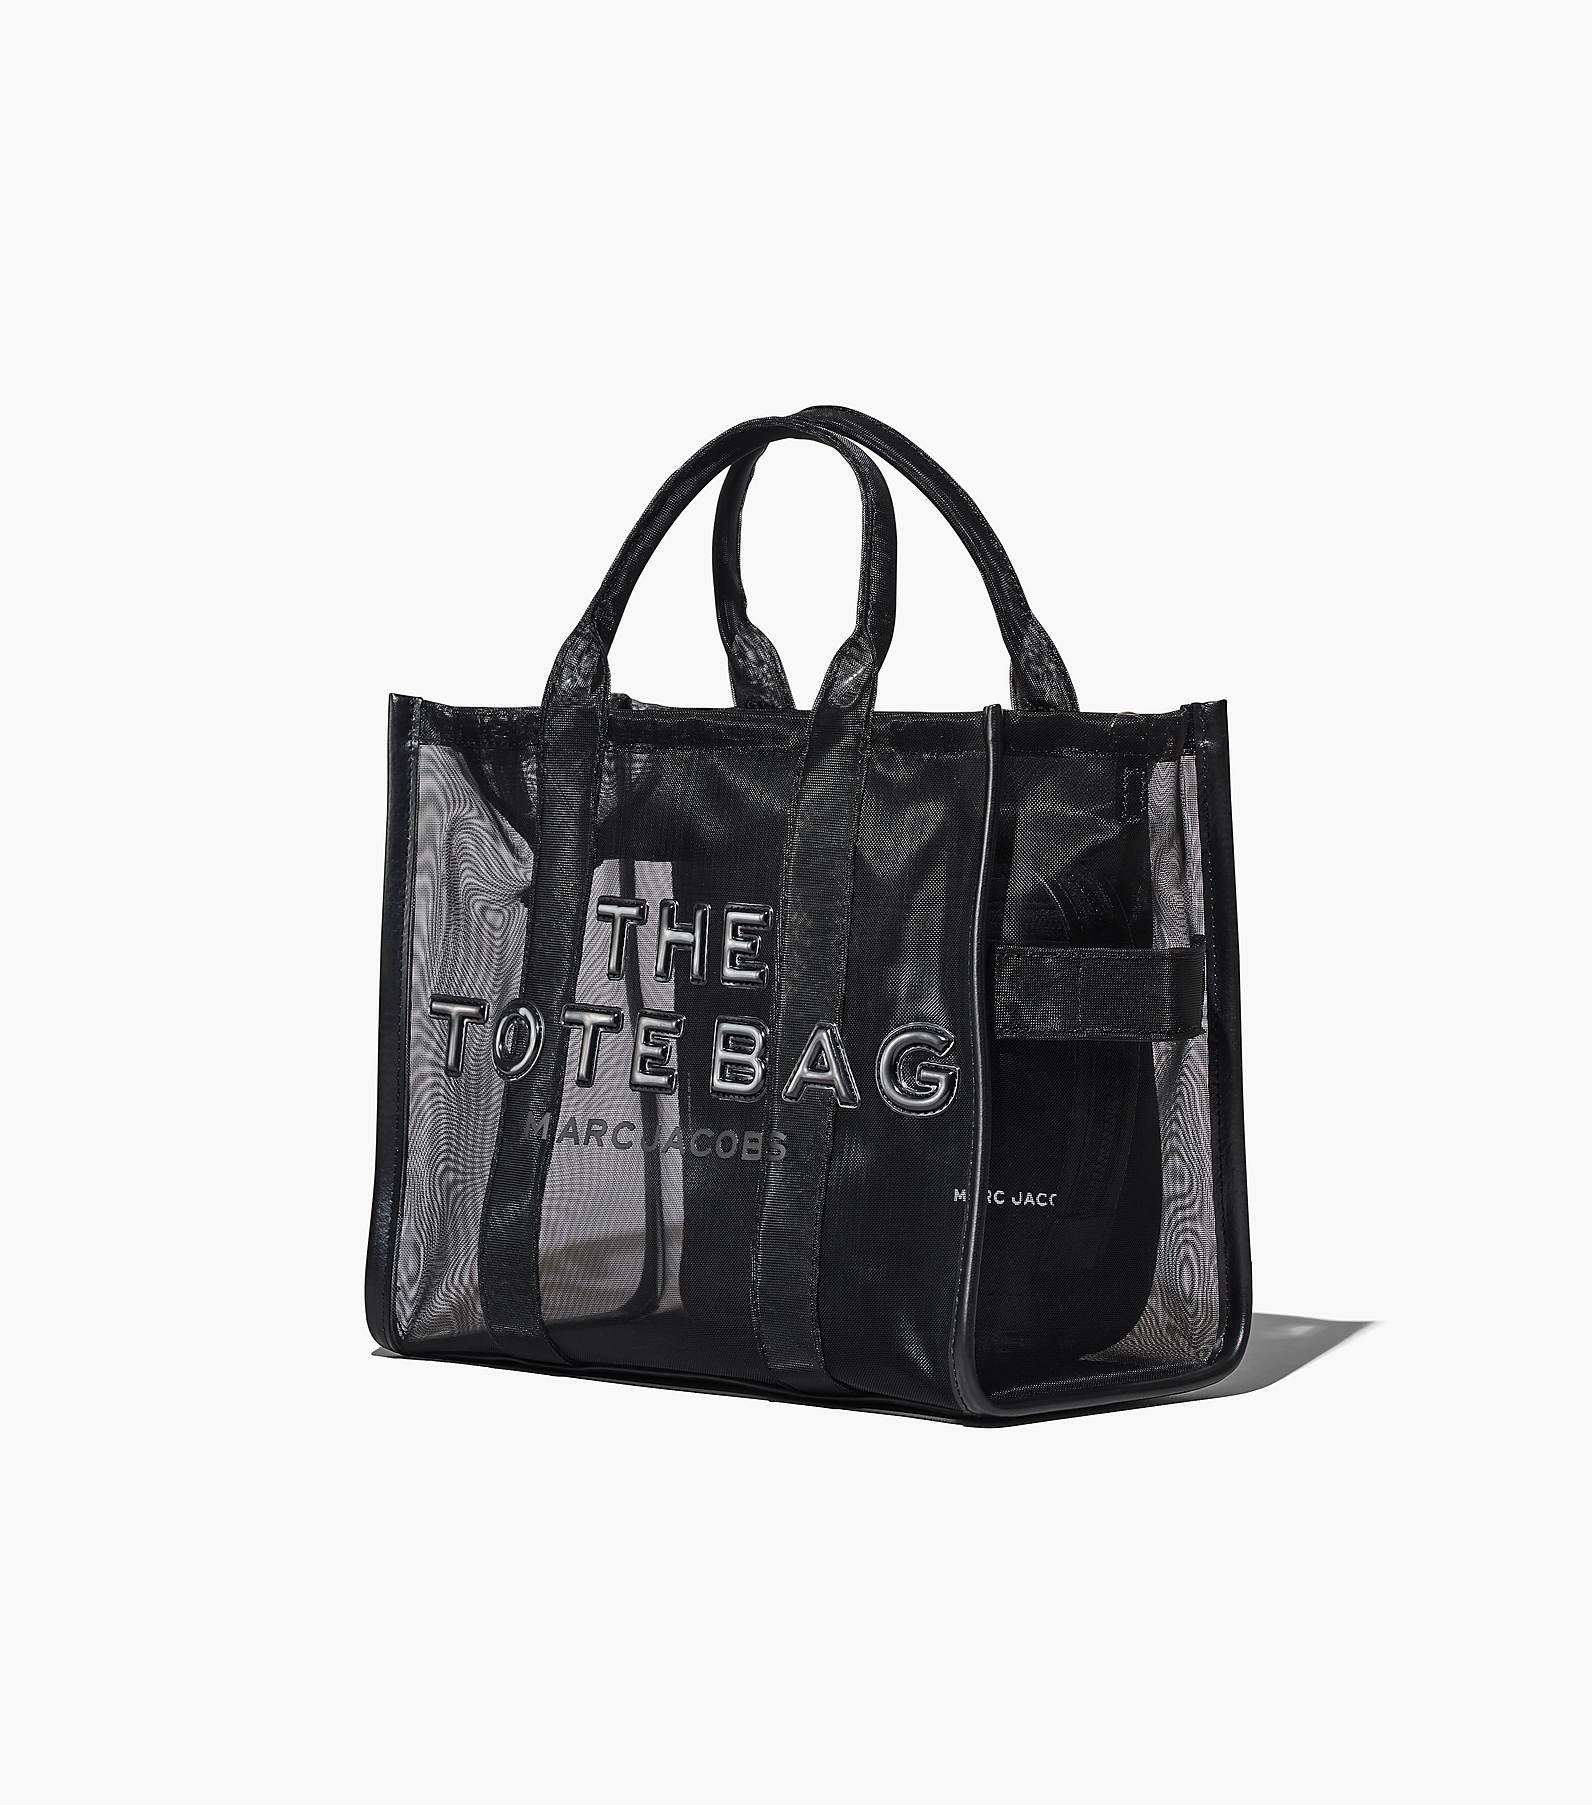 The Mesh Medium Tote Bag